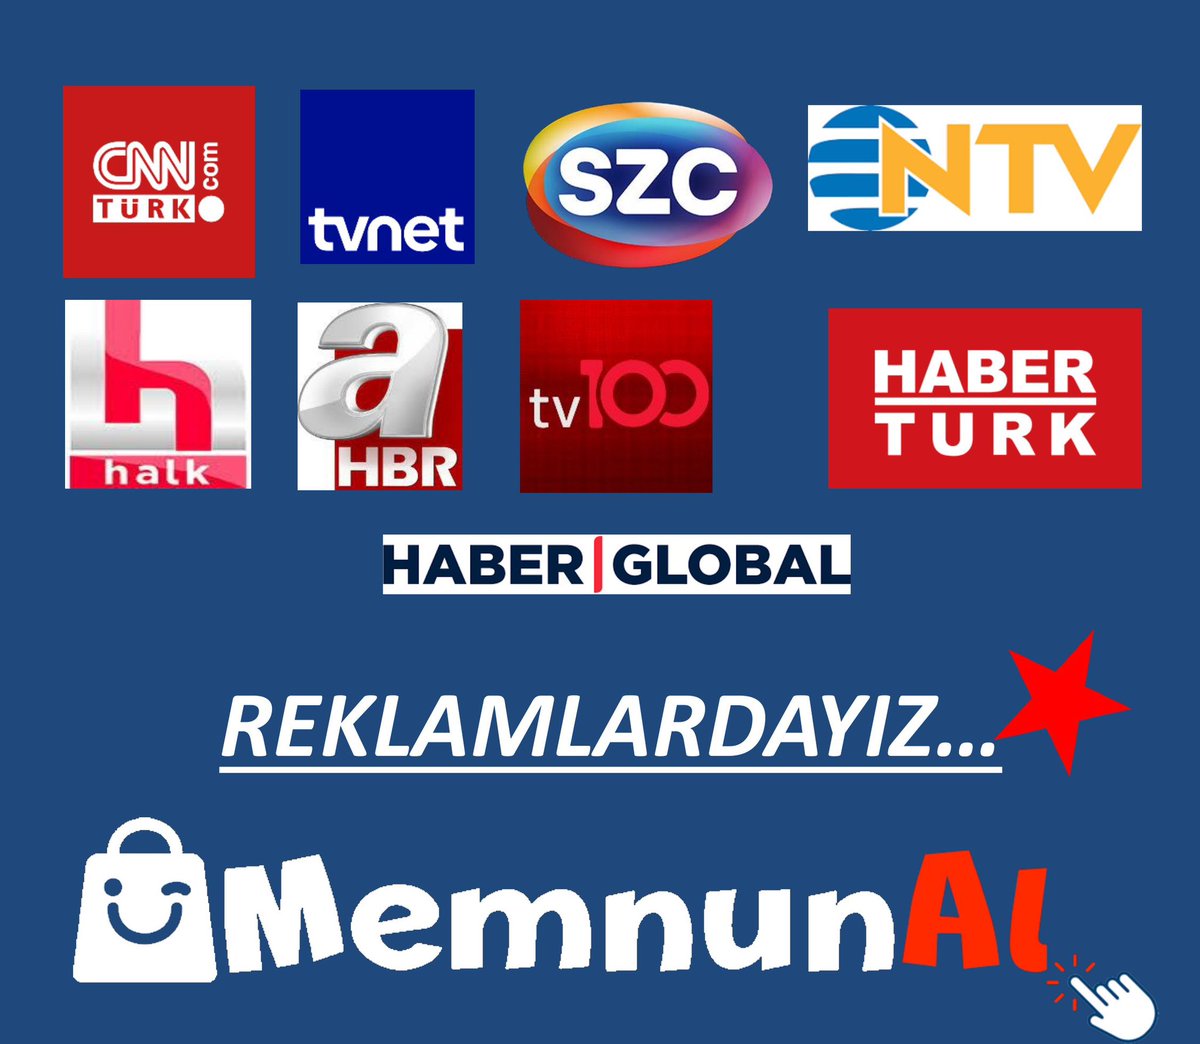 MemnunAL.com Televizyon reklamları yayında. 

#memnunal #reklam #alışveriş